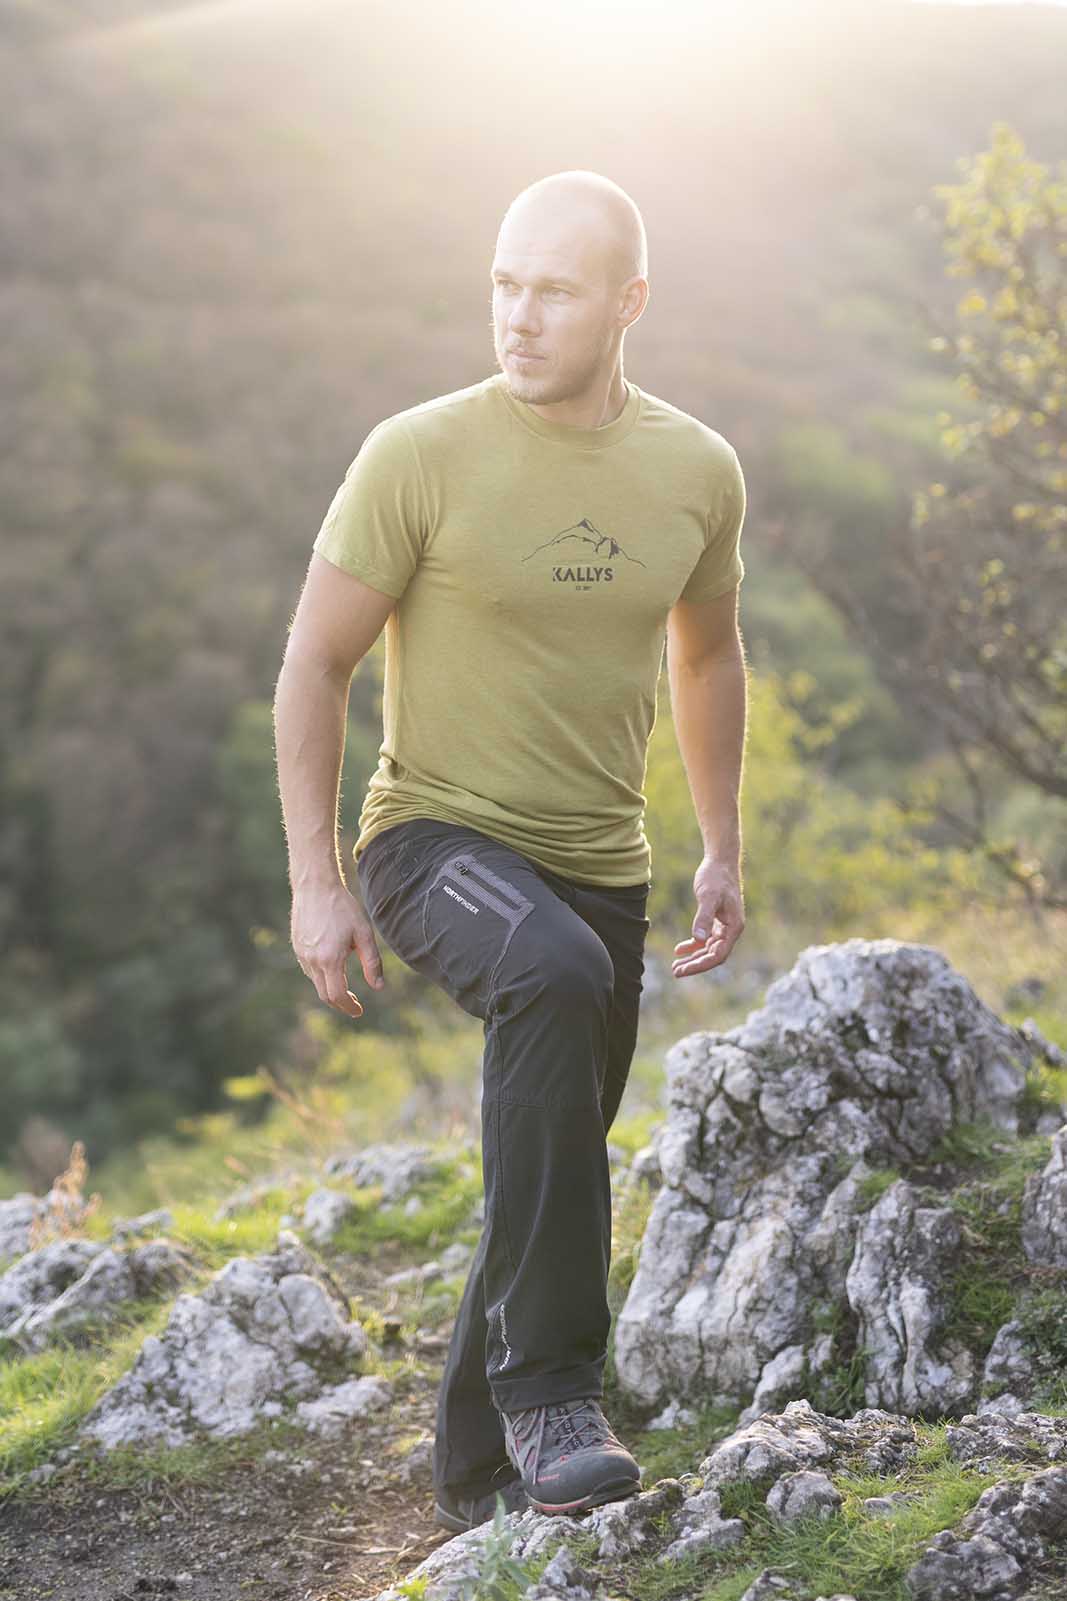 Muž počas západu slnka vystupuje na kopec. Má oblečené zelené tričko značky kallys, ktoré sa nazýva Supreme Silk a je z merina a tencelu